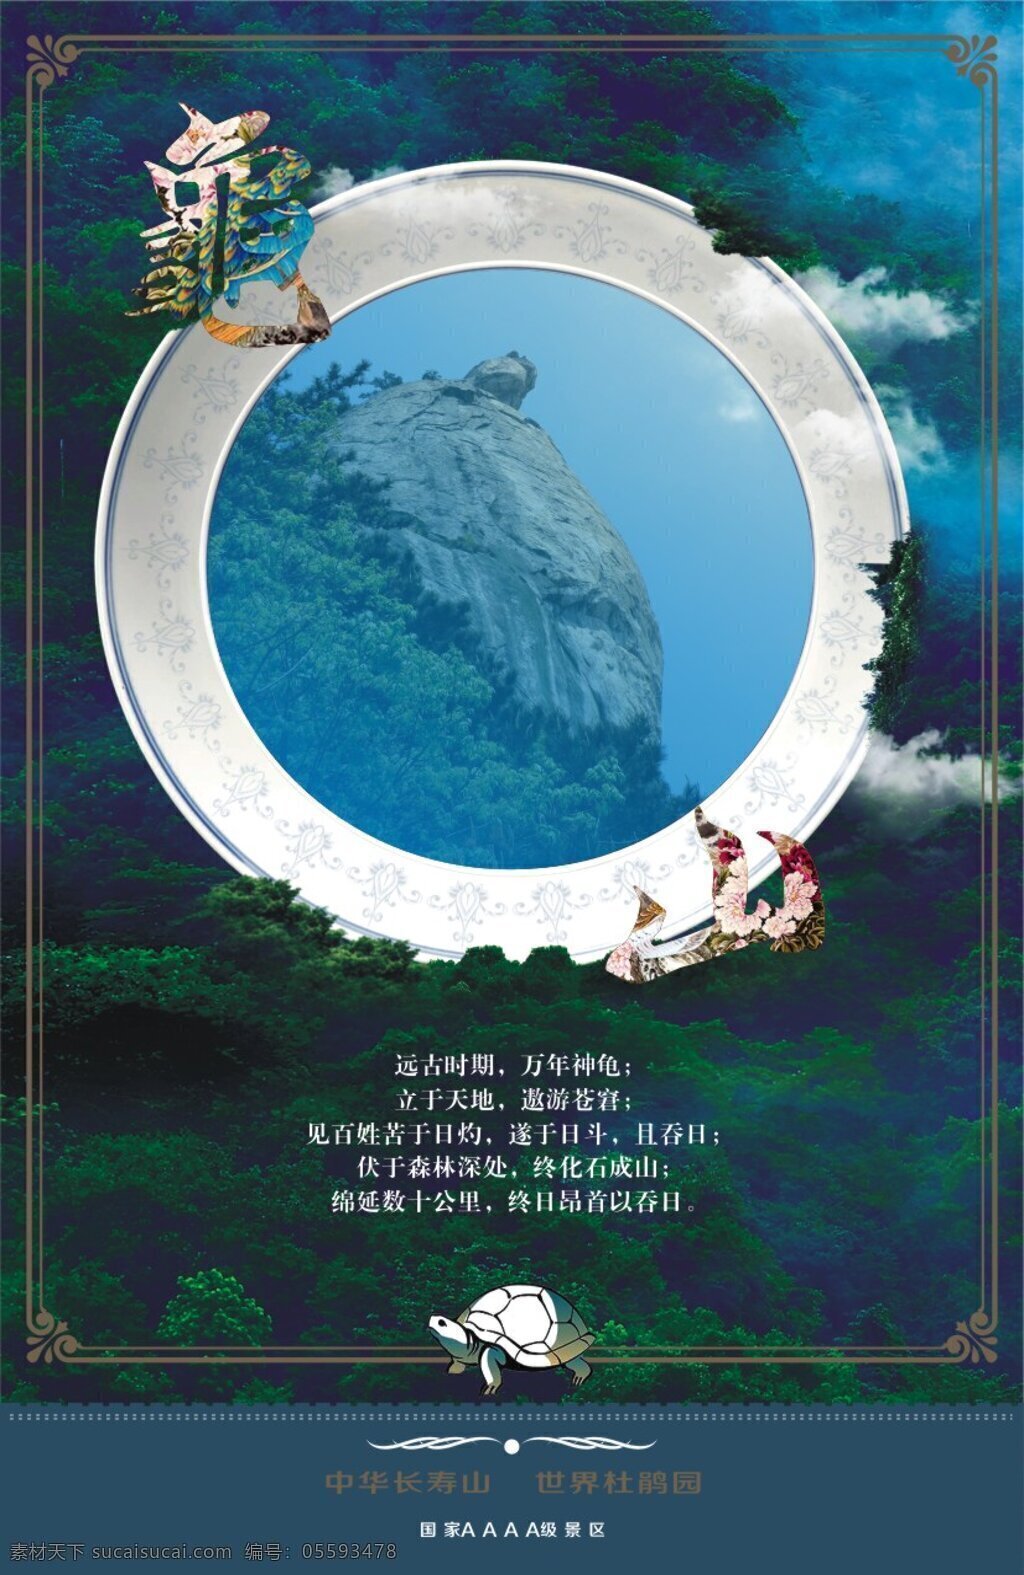 景区海报 秋季 旅游 宣传海报 景区 宣传 炫彩 照片树 彩林 公园 度假区 青色 天蓝色